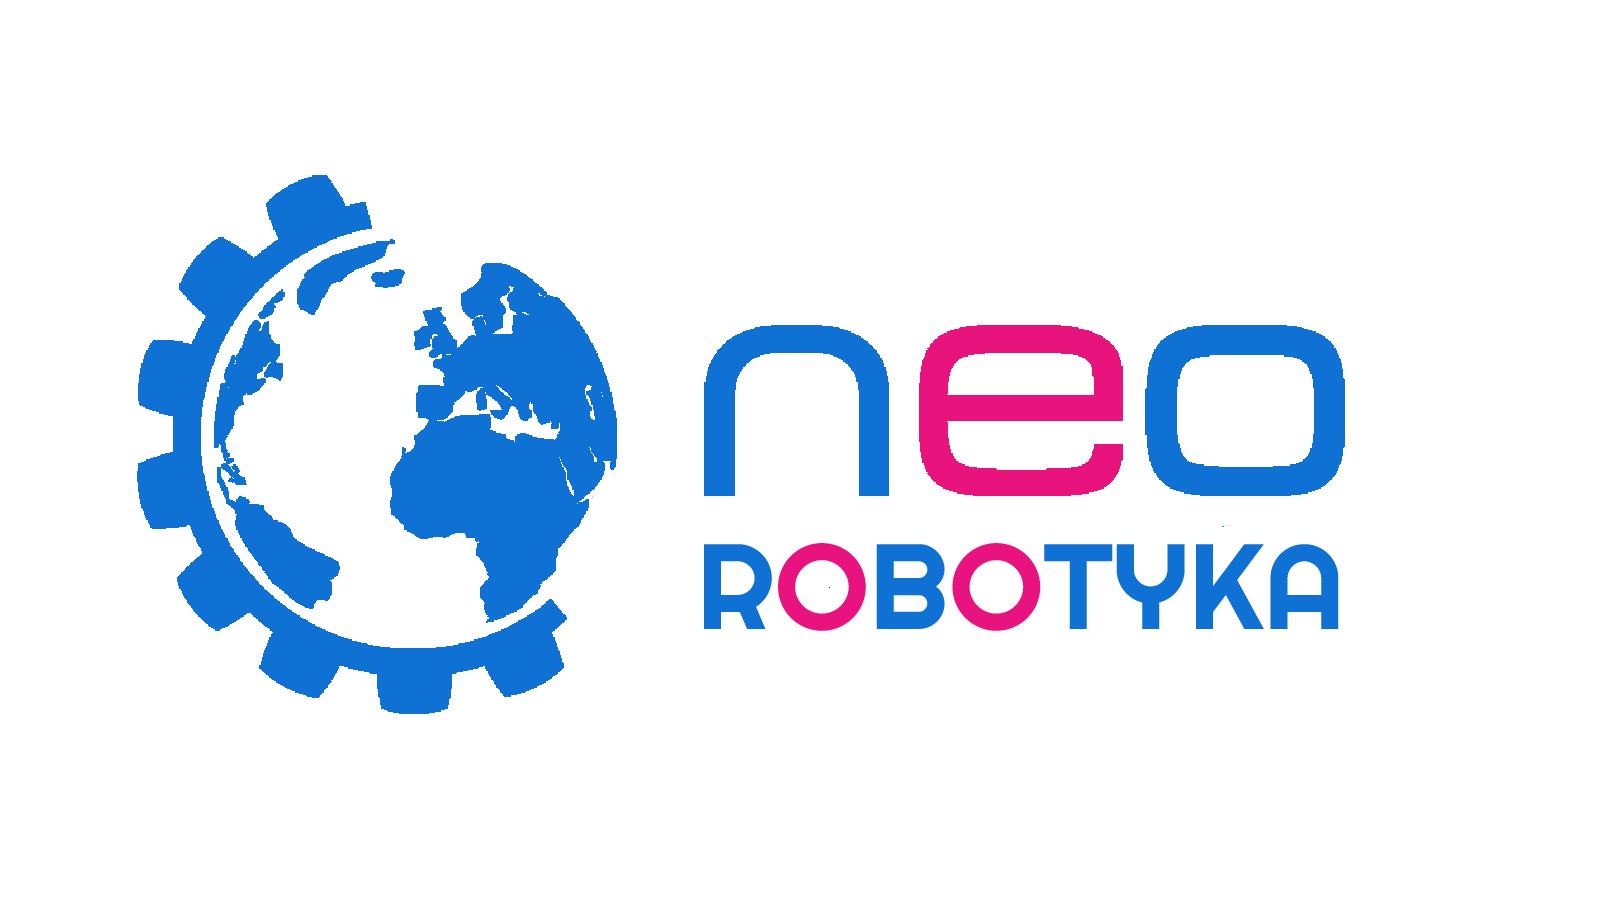 www.neorobotyka.pl